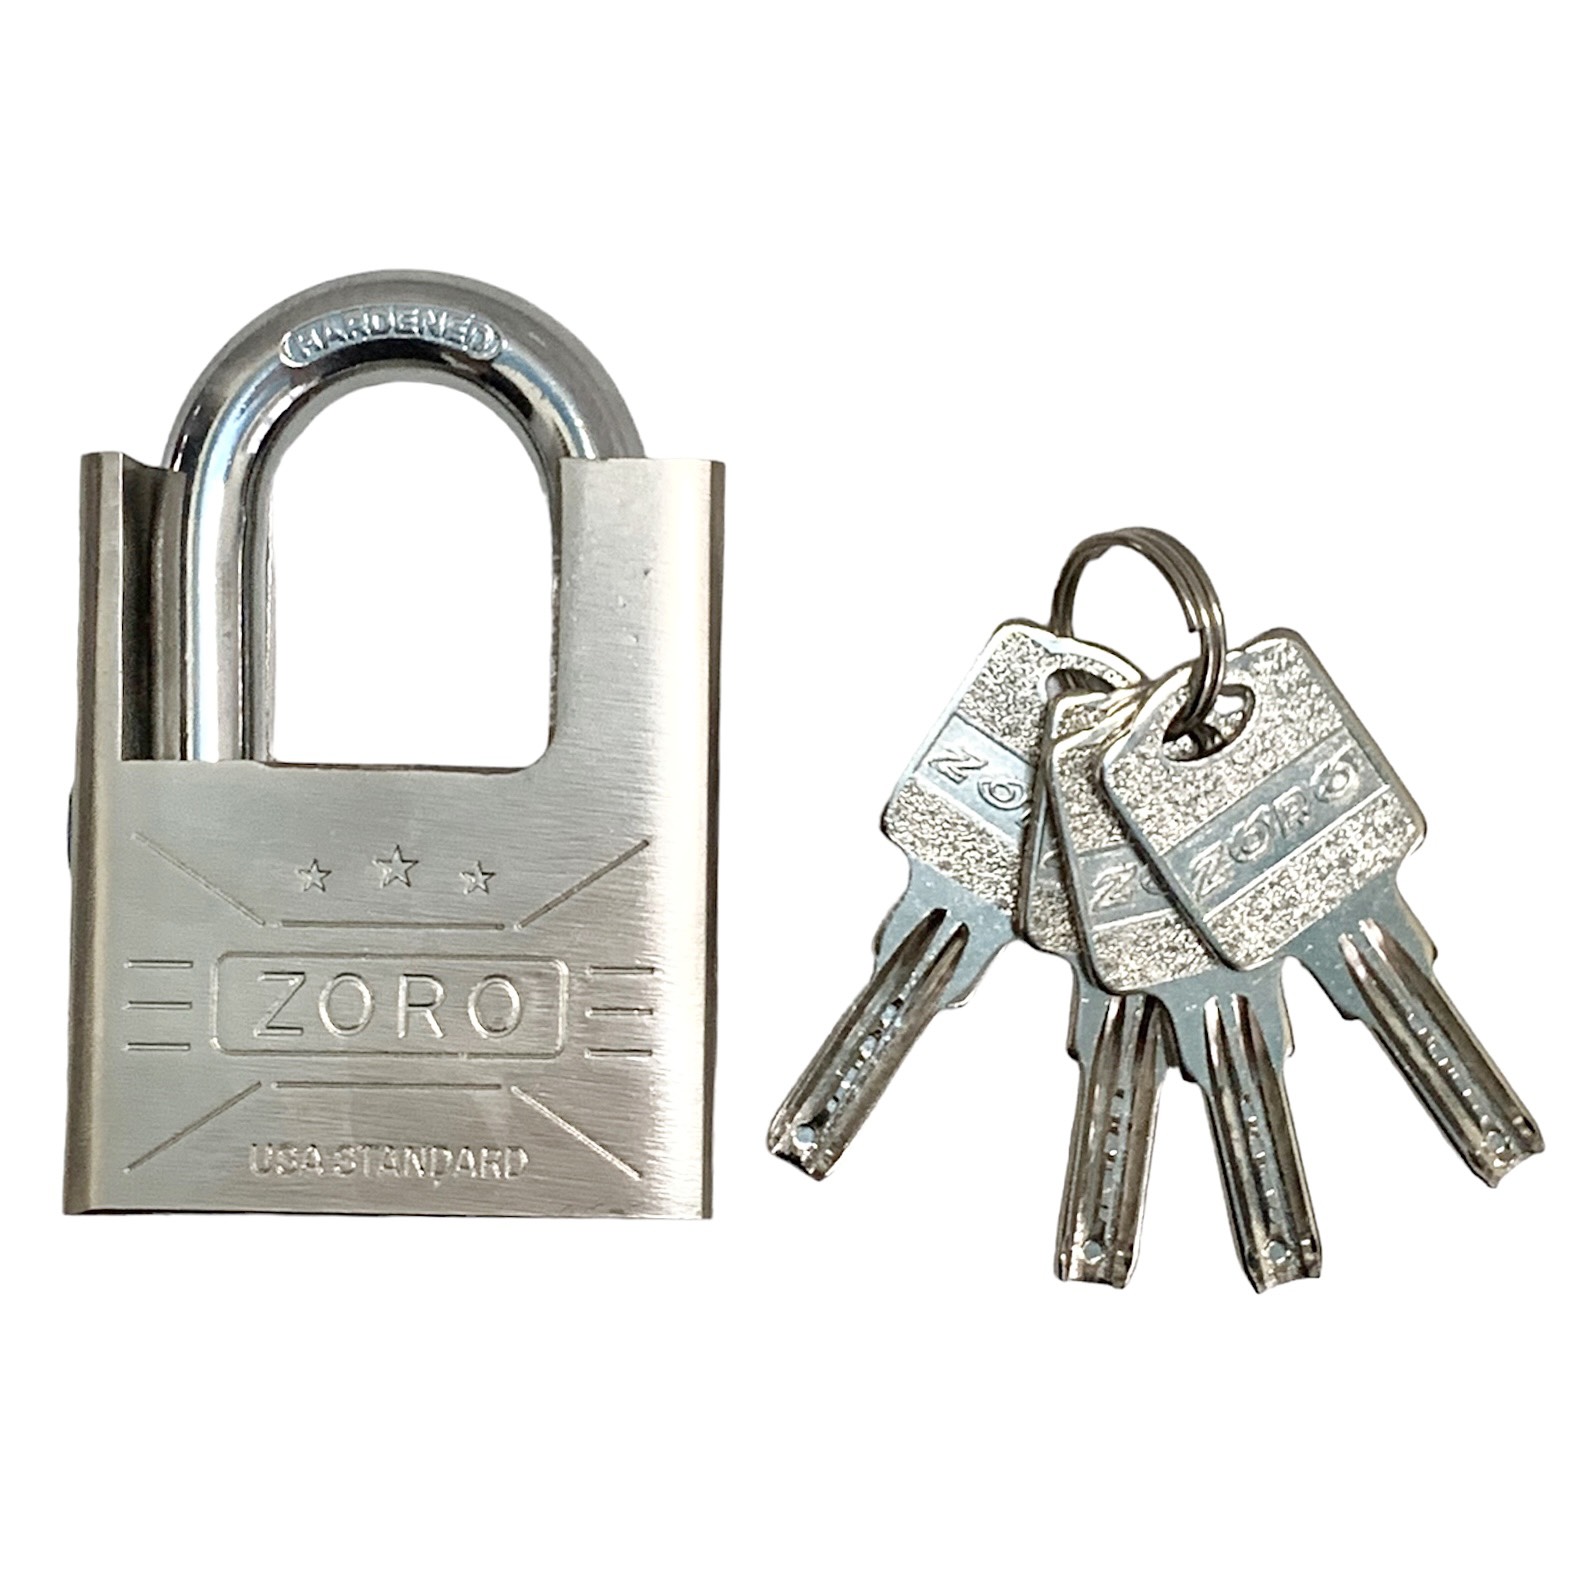 Ổ khóa ZORO 6 phân chống cắt,chìa muỗng - ổ khóa chống cắt, ổ khóa công nghệ mỹ, khóa bấm không cần dùng chìa